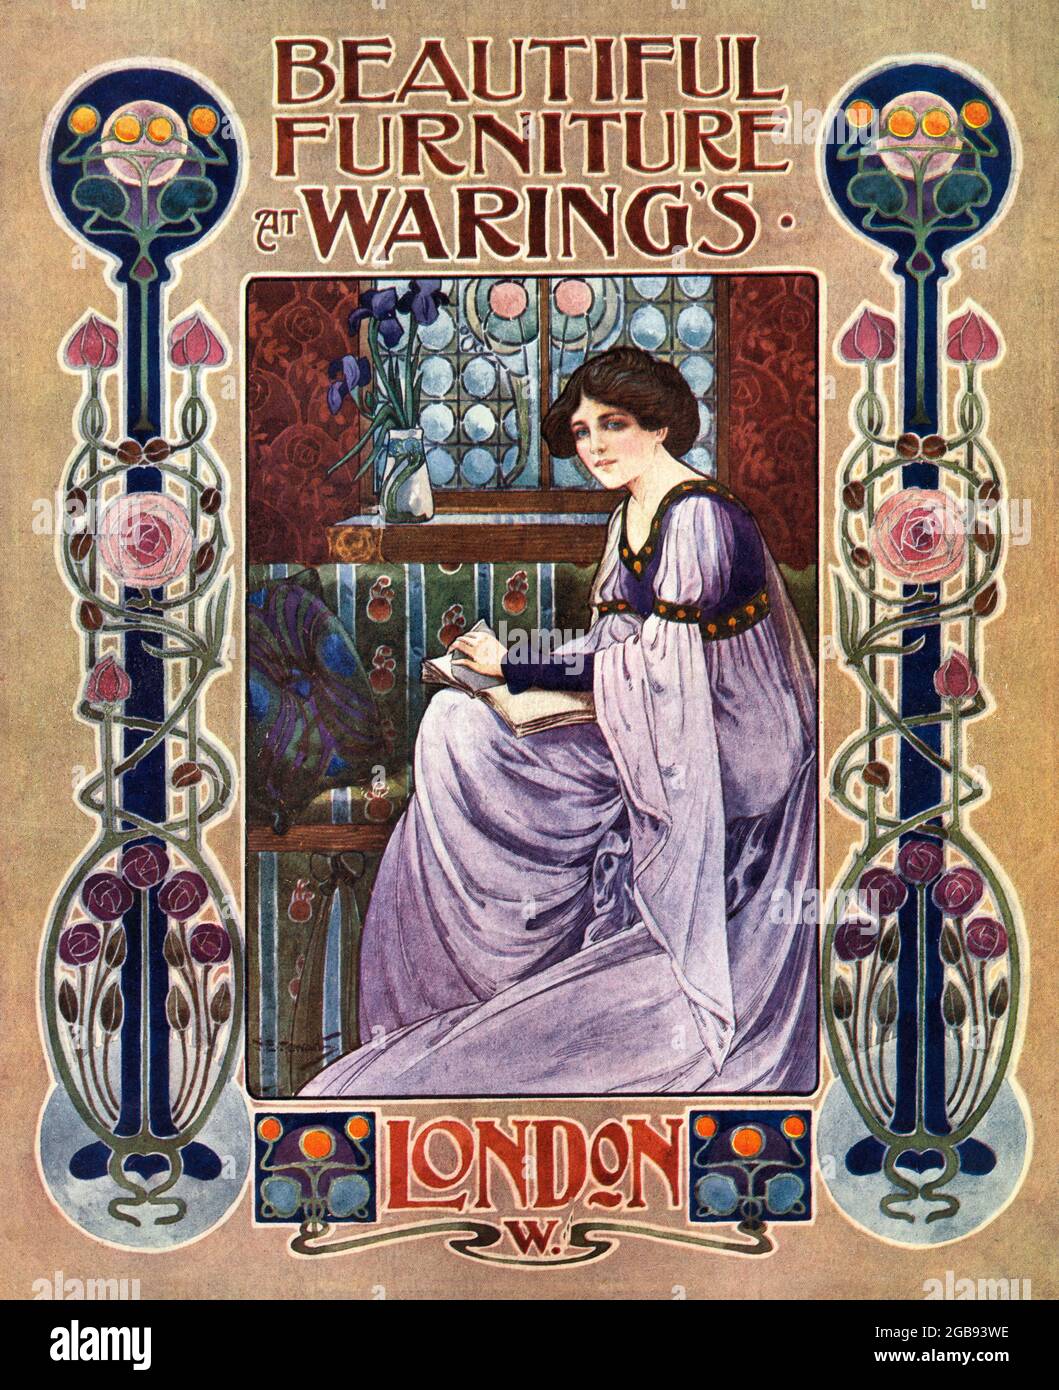 Art Nouveau-Werbung Waring's 1905, Historisches Werbeplakat Stockfoto